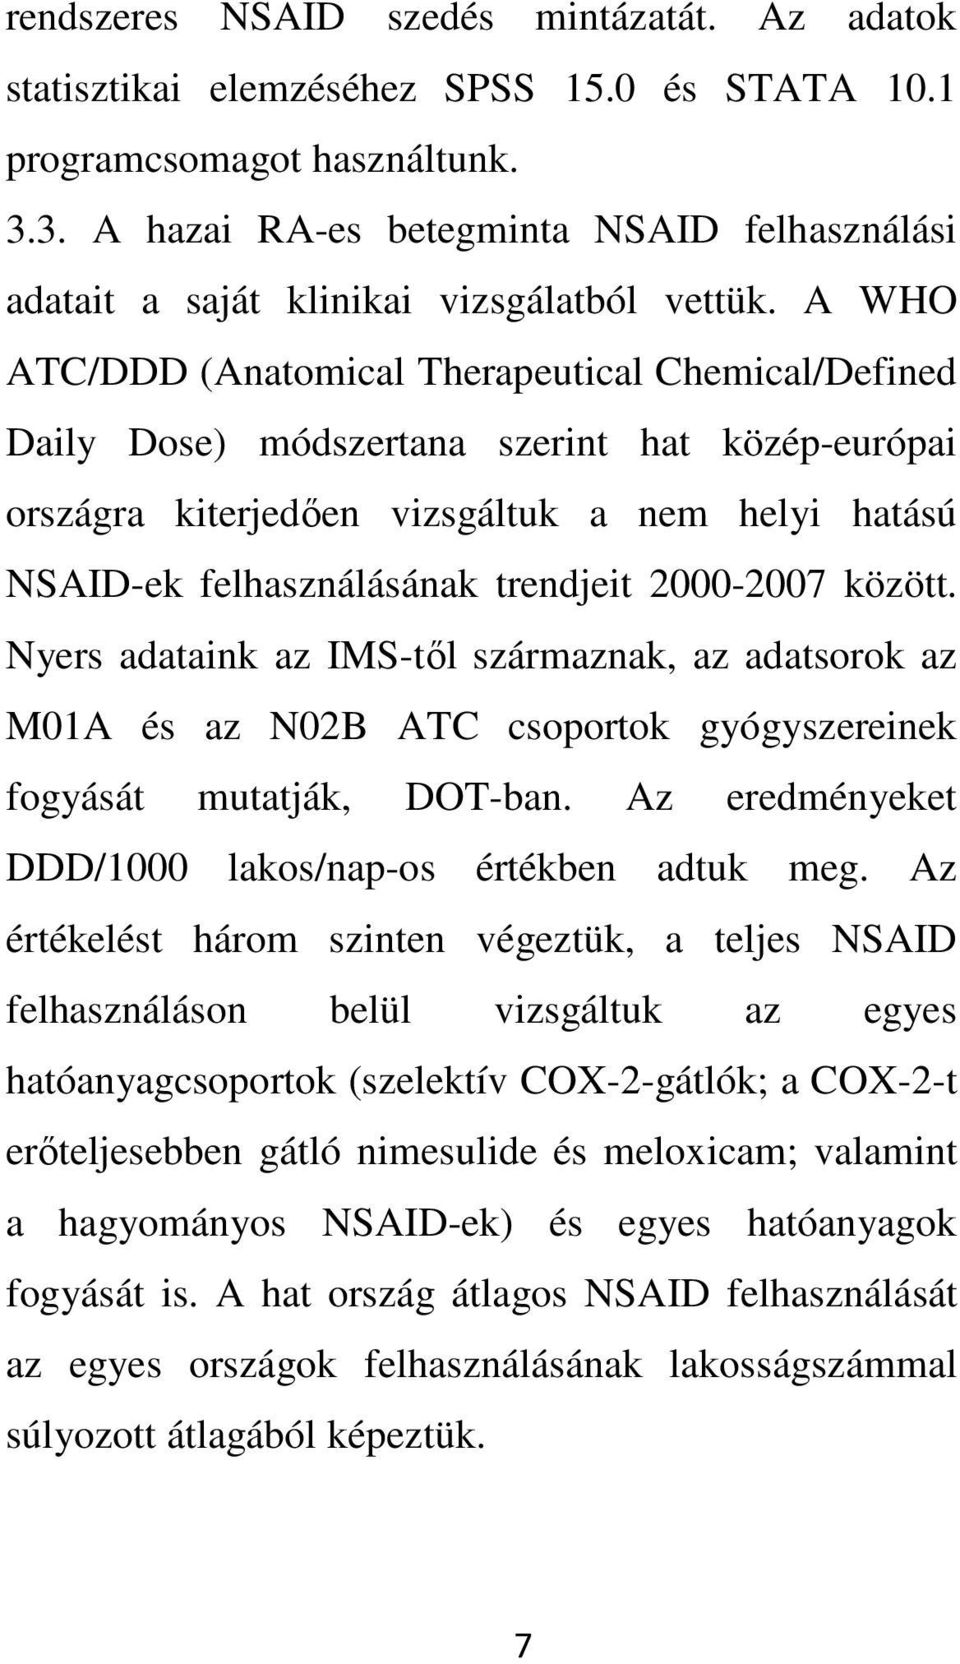 A WHO ATC/DDD (Anatomical Therapeutical Chemical/Defined Daily Dose) módszertana szerint hat közép-európai országra kiterjedıen vizsgáltuk a nem helyi hatású NSAID-ek felhasználásának trendjeit